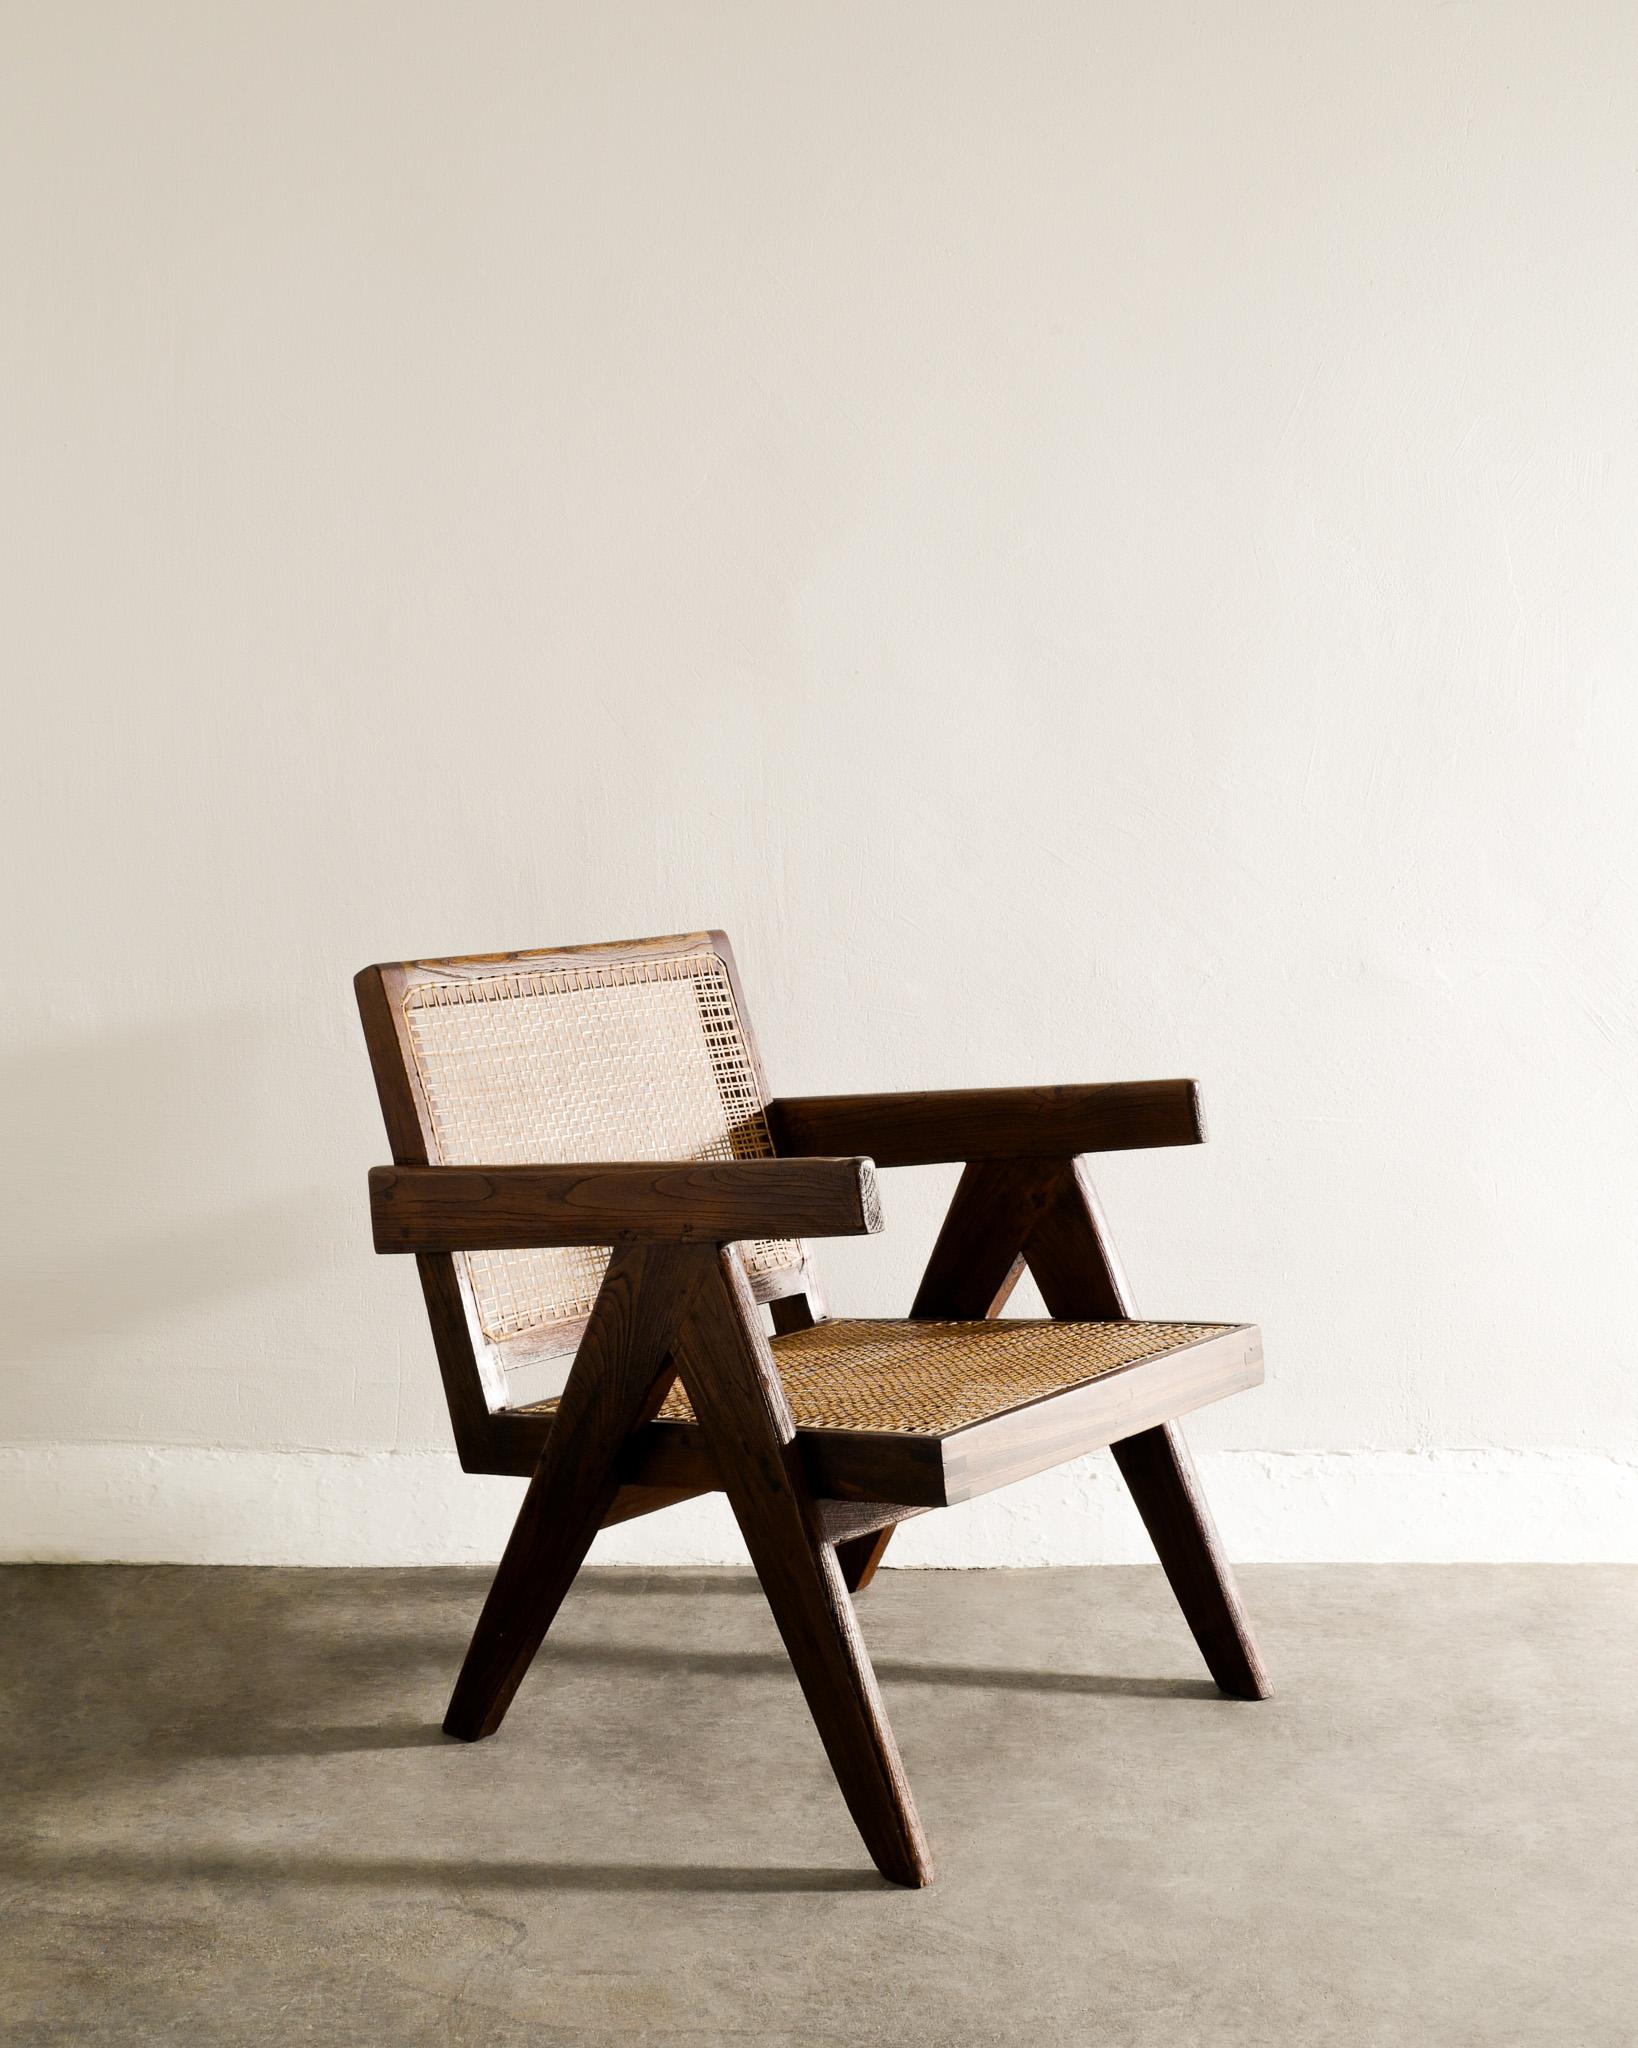 Rare fauteuil en teck et rotin de Pierre Jeanneret réalisé pour Chandigarh en Inde dans les années 1950. En bon état vintage. Le coussin n'est pas inclus mais peut être fabriqué sur demande. 

Dimensions : H : 69 cm / 27.50